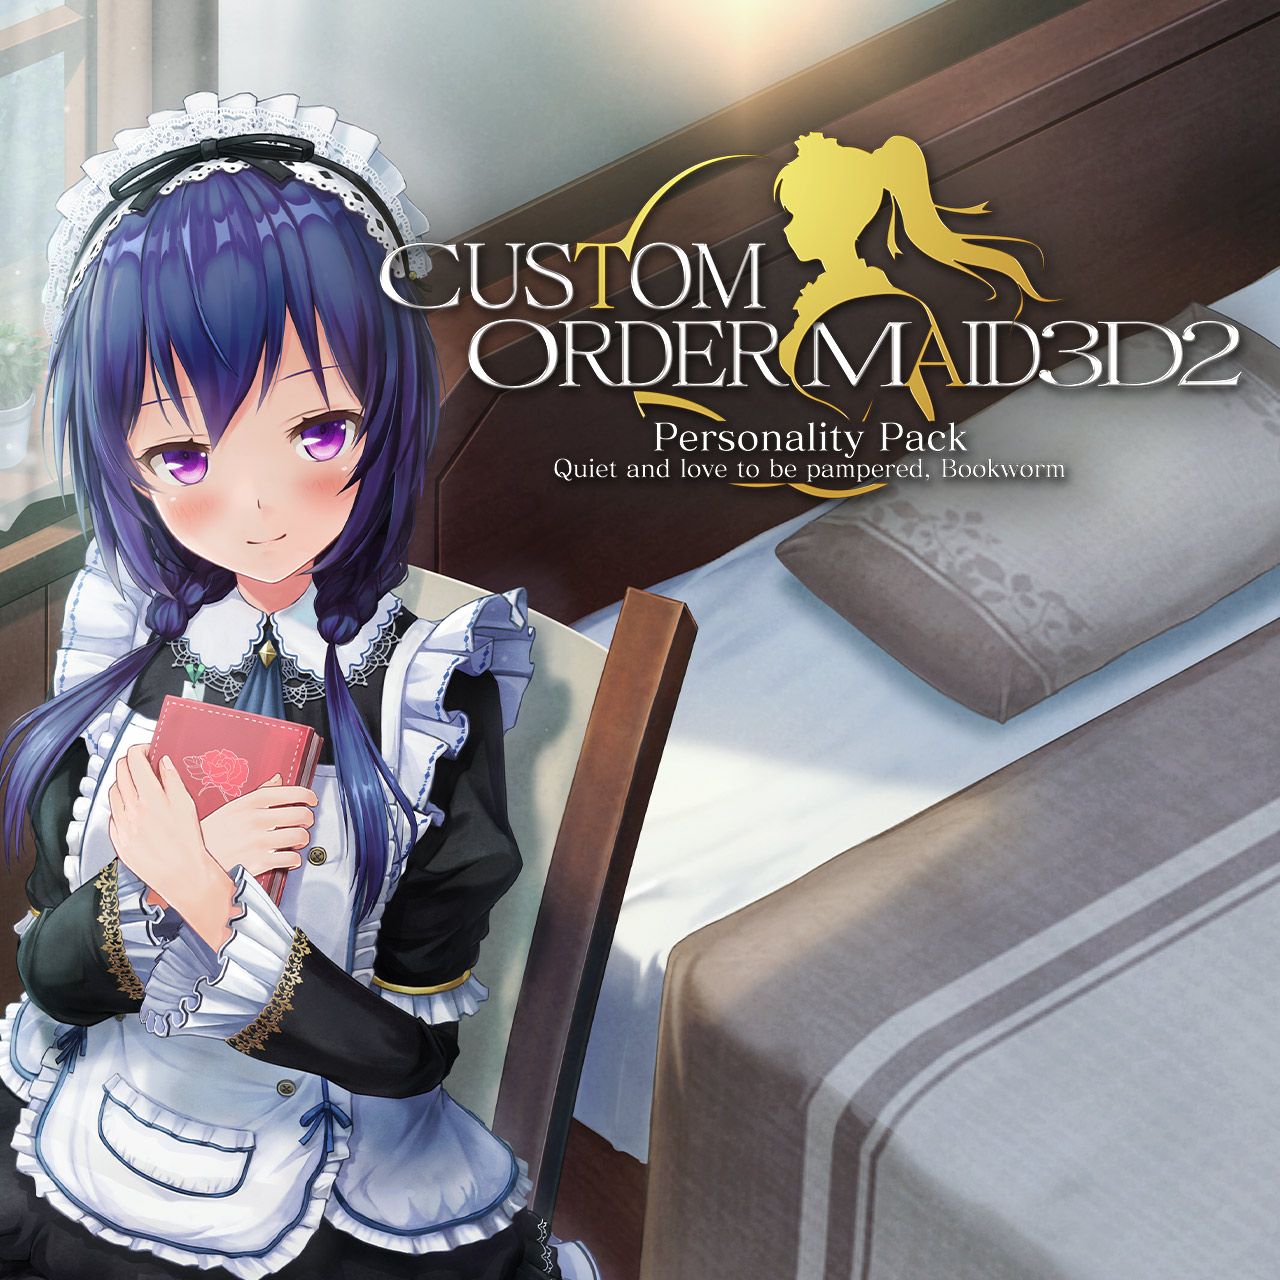 Custom order maid steam фото 66